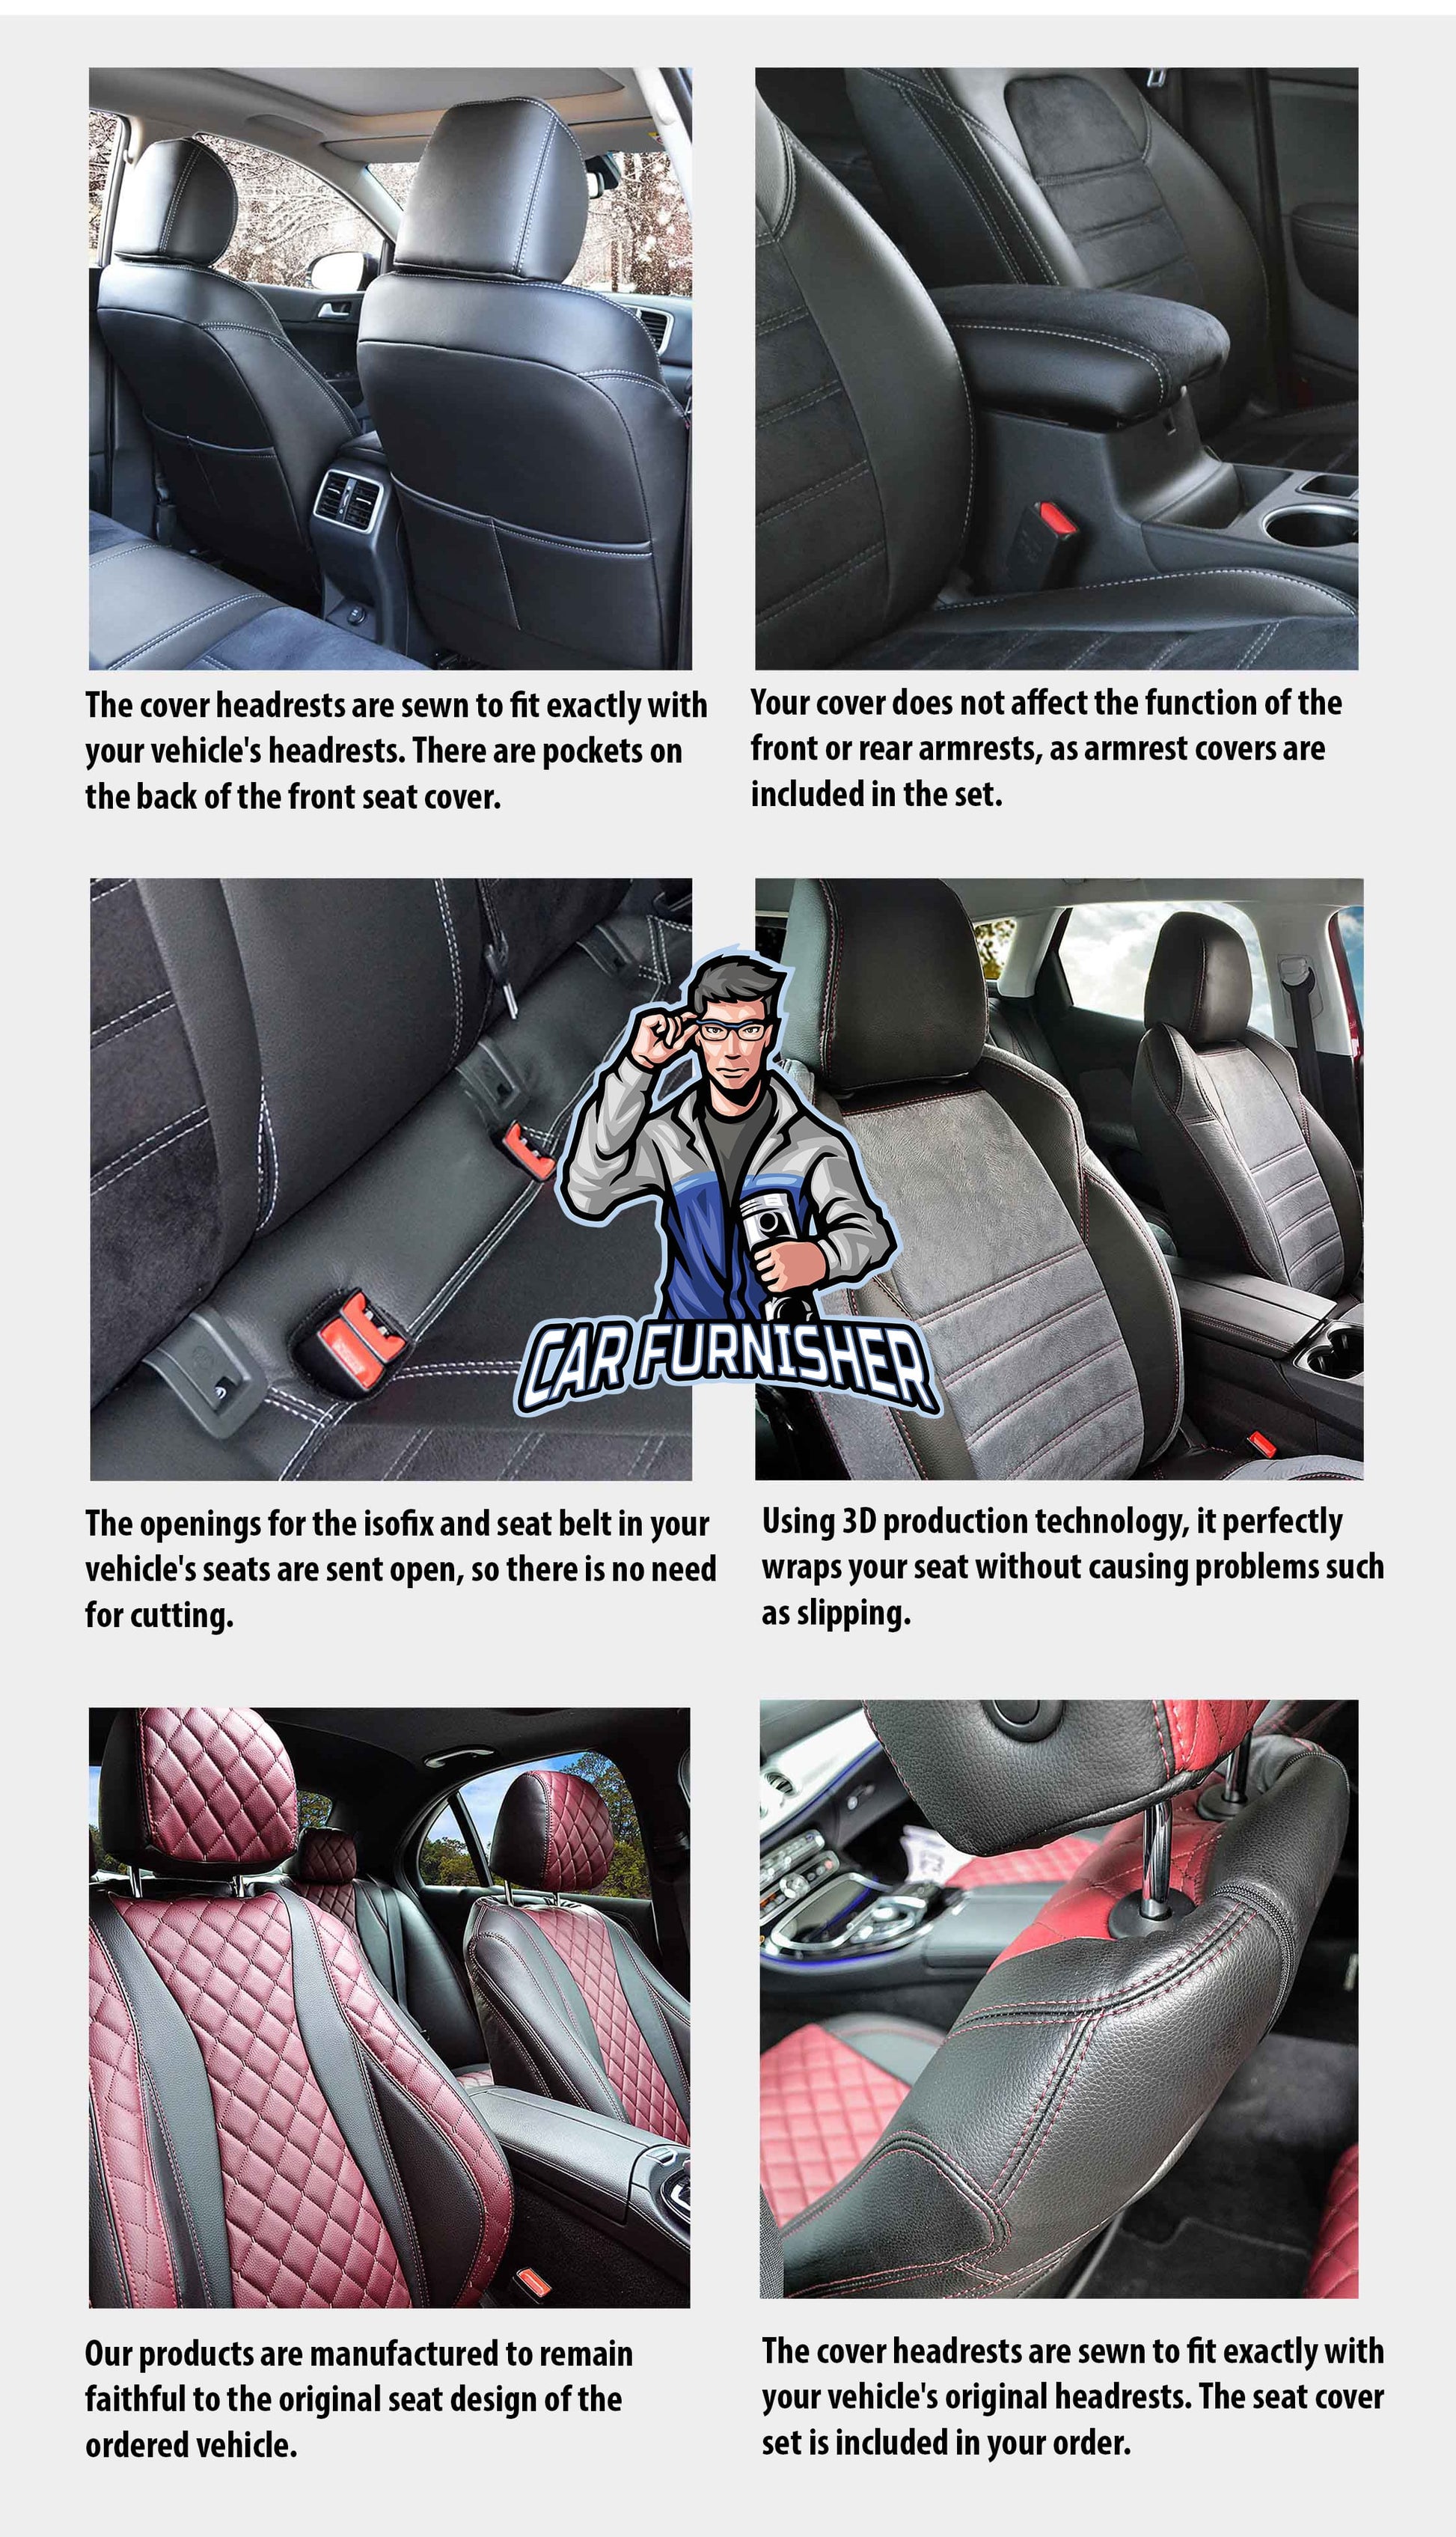 Volkswagen Transporter Seat Cover Camouflage Waterproof Design Thar Camo Waterproof Fabric